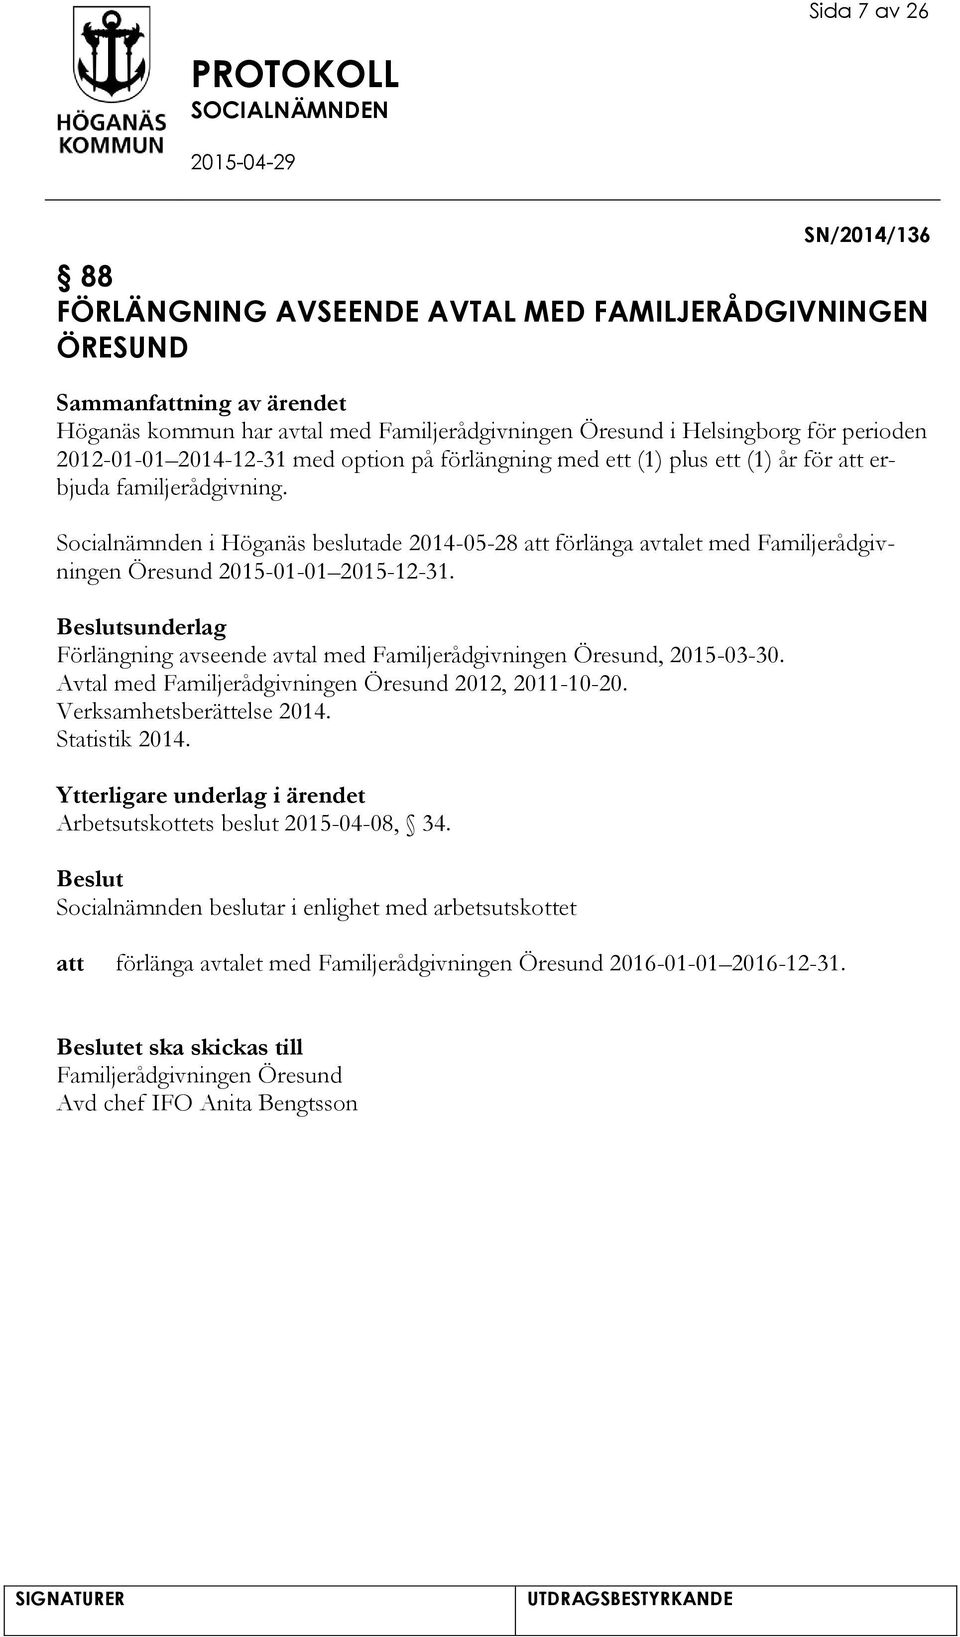 Socialnämnden i Höganäs beslutade 2014-05-28 förlänga avtalet med Familjerådgivningen Öresund 2015-01-01 2015-12-31. sunderlag Förlängning avseende avtal med Familjerådgivningen Öresund, 2015-03-30.